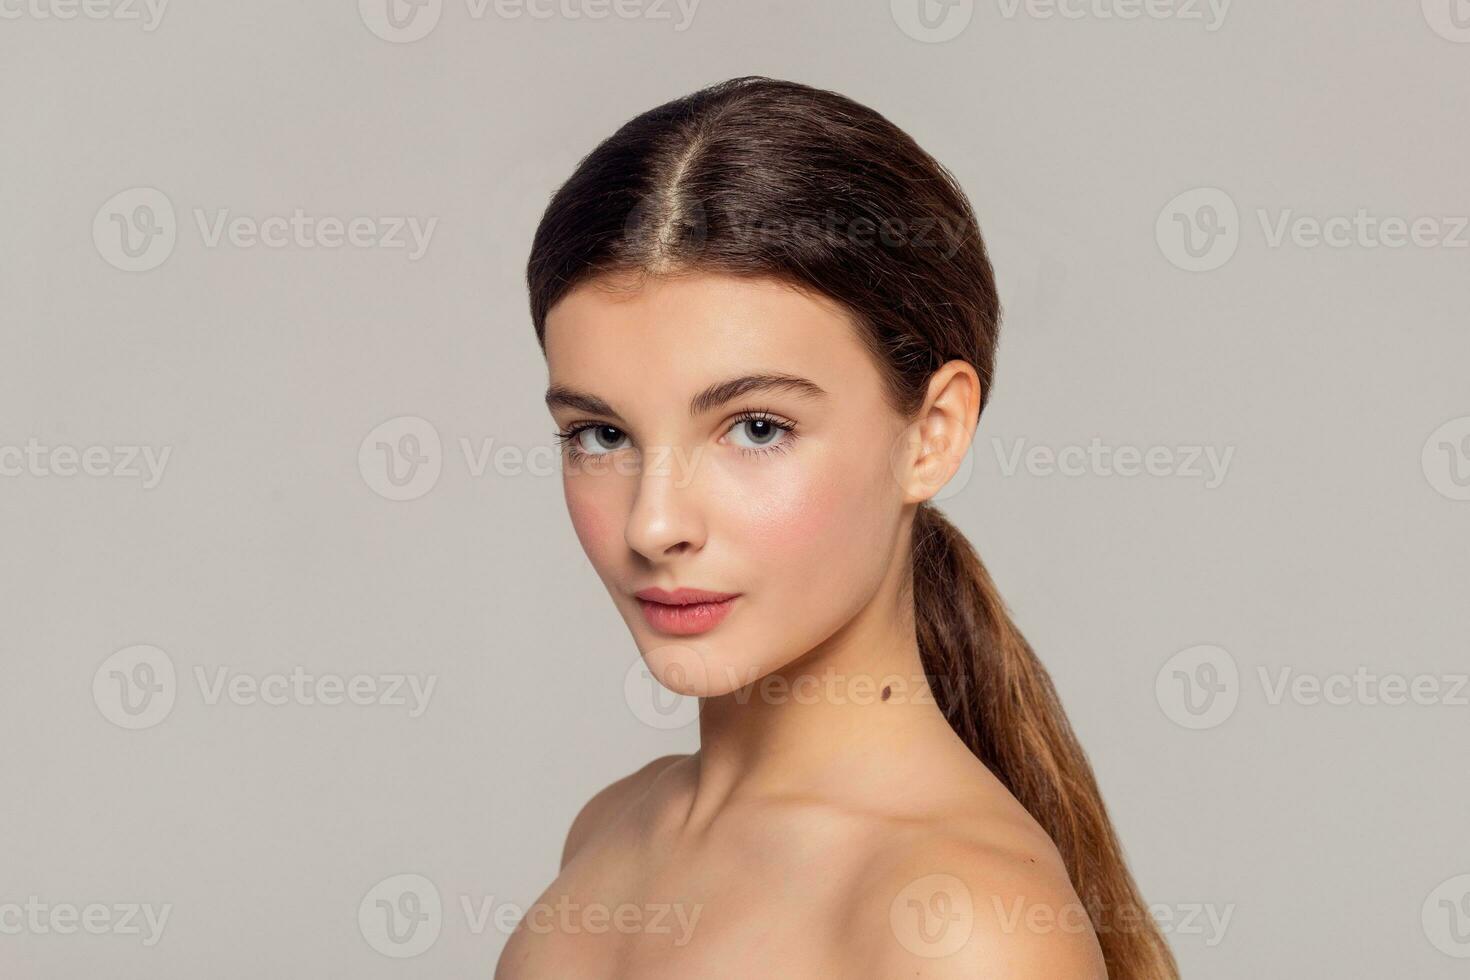 magnifique Jeune femme avec nettoyer Frais peau toucher posséder visage photo